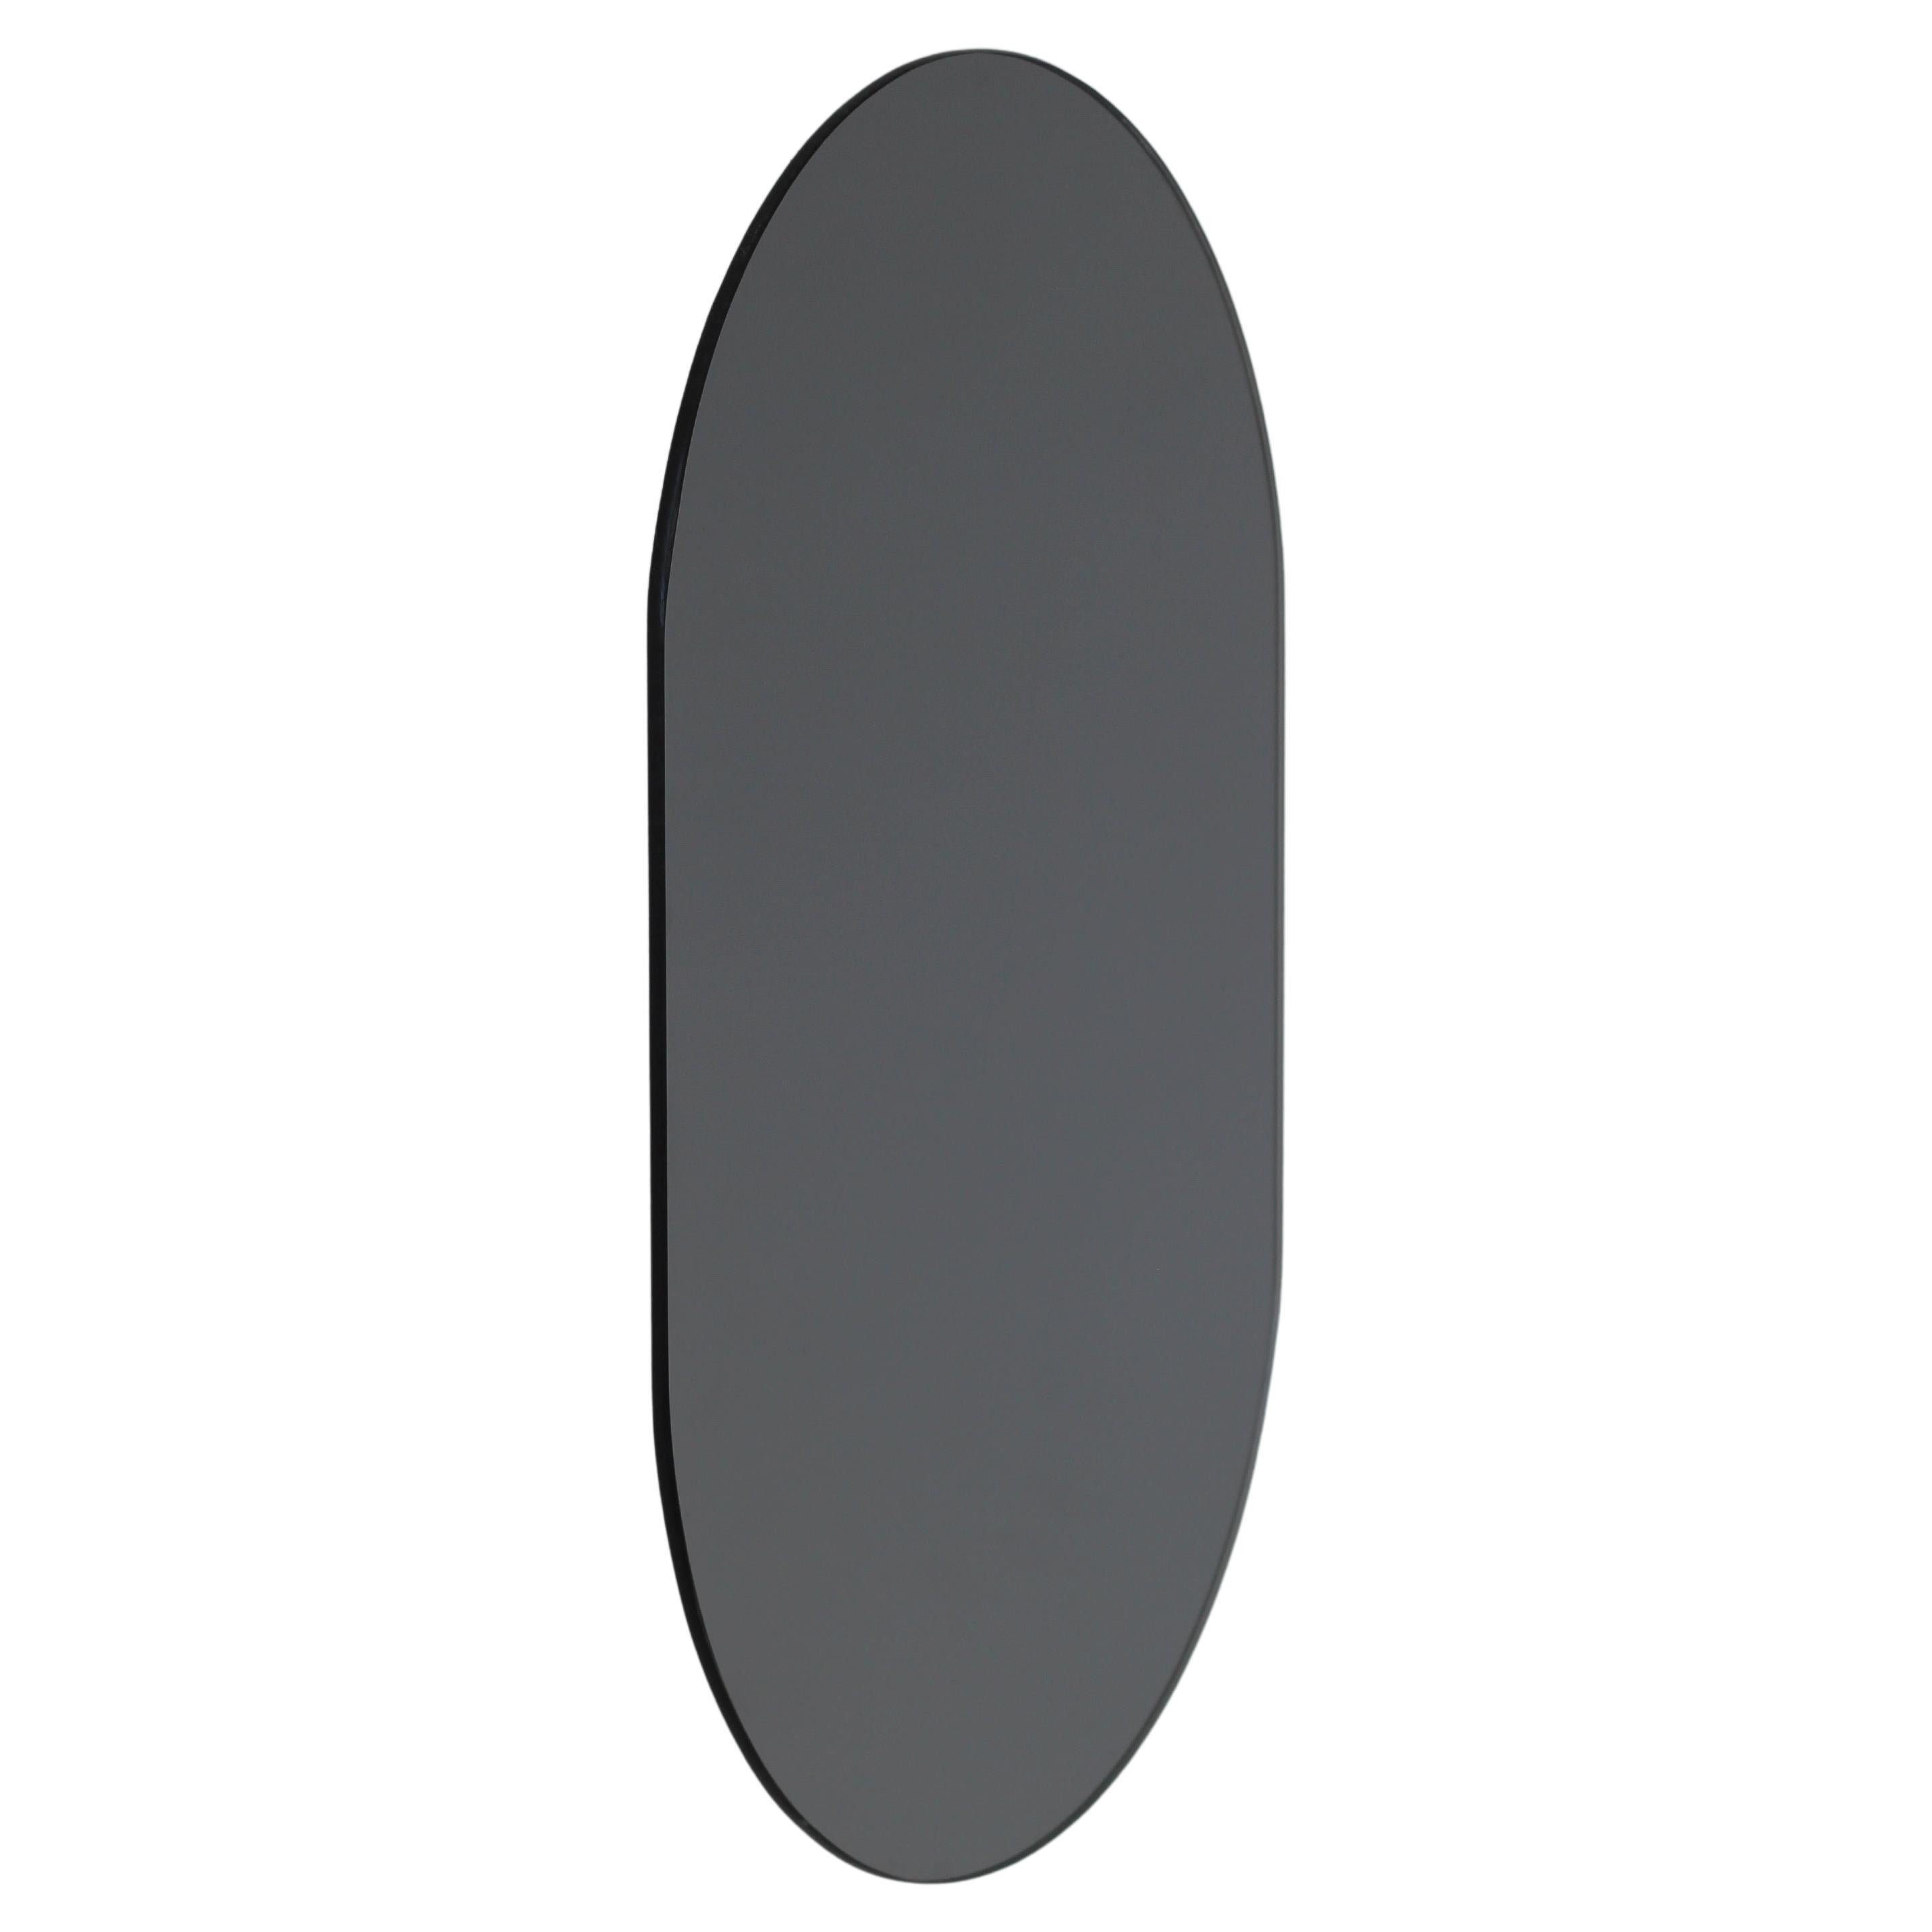 Zeitgenössischer rahmenloser schwarz getönter Capsula Capsule-Spiegel, klein